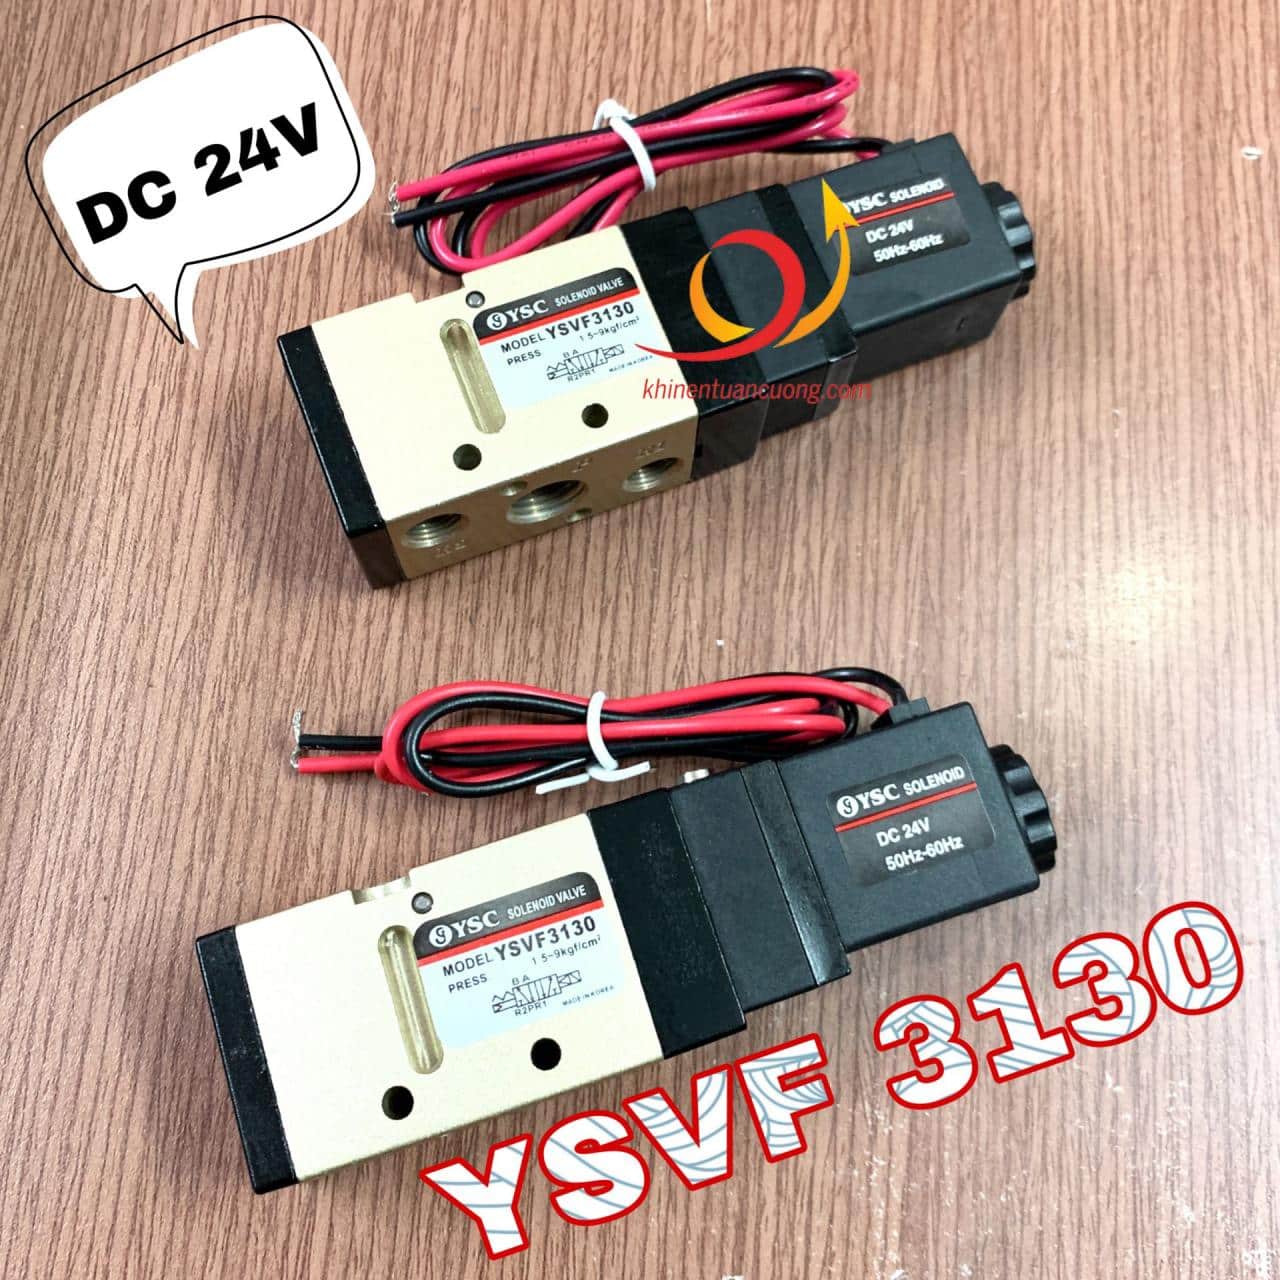 Van YSVF3130 hãng YSC có phần cấp khí sắp xếp dang chéo nên rất phù hợp để thay thế cho mã SV3130 đến từ SKP